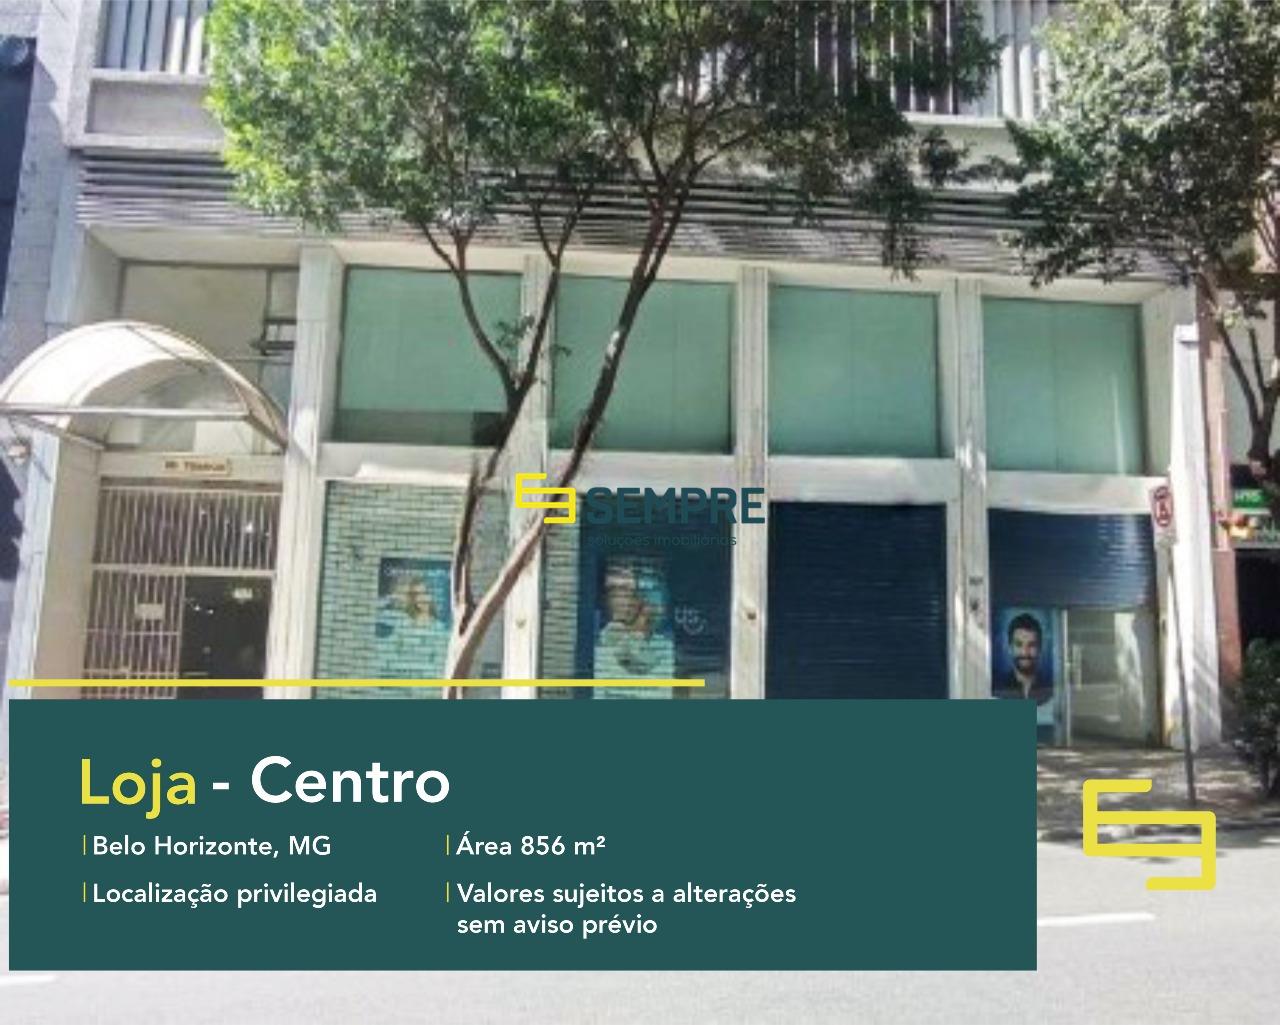 Loja para alugar no bairro Centro em Belo Horizonte. O estabelecimento comercial conta, sobretudo, com área de 856 m².